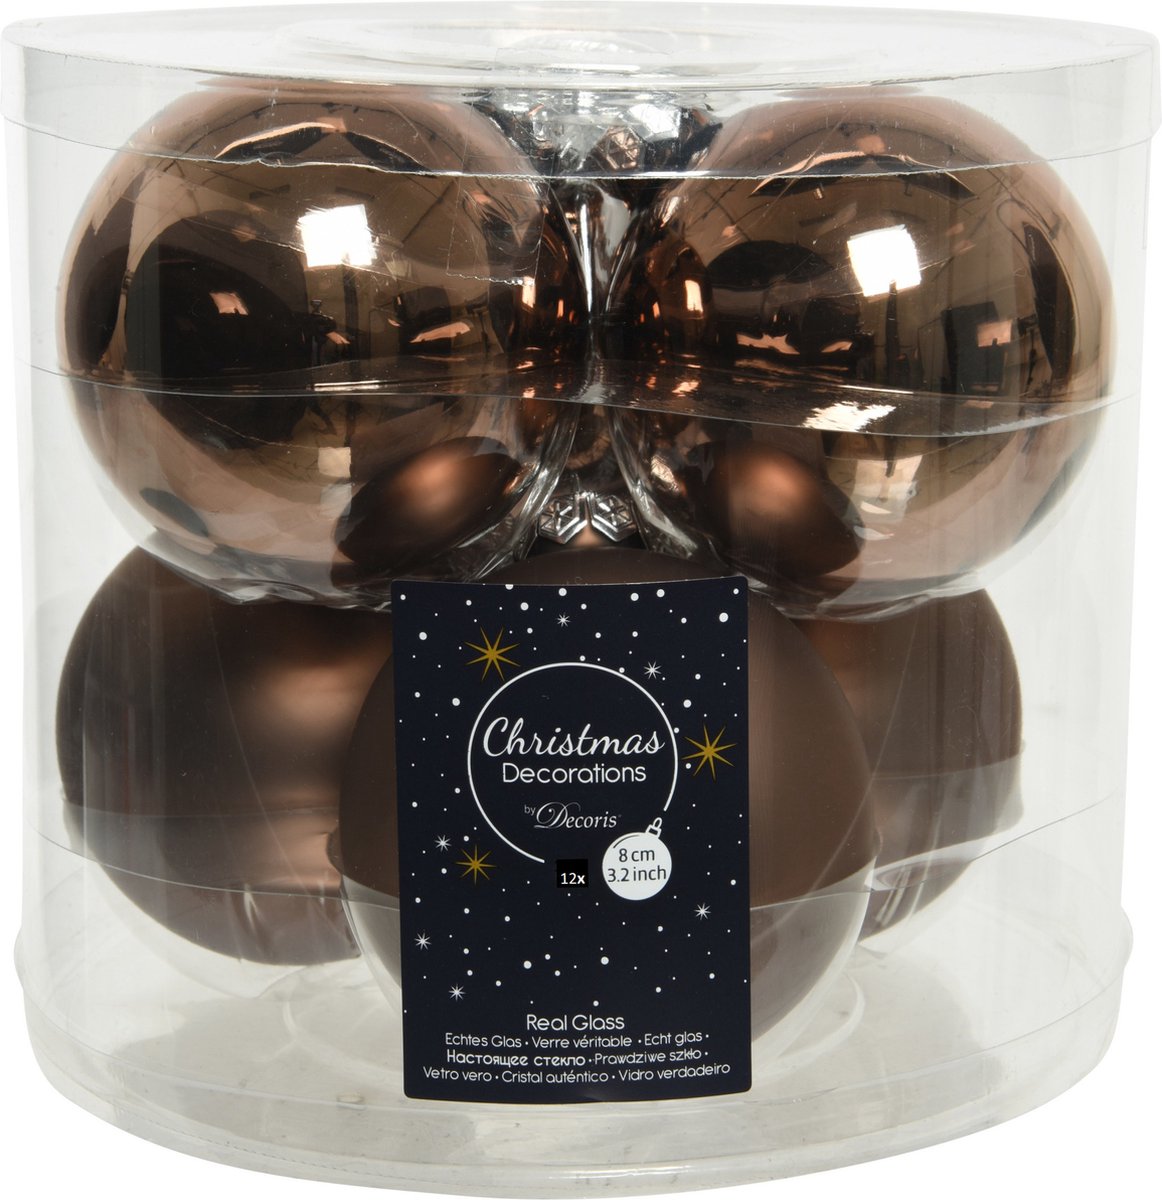 12x stuks kerstballen walnoot bruin van glas 8 cm - mat en glans - Kerstversiering/boomversiering